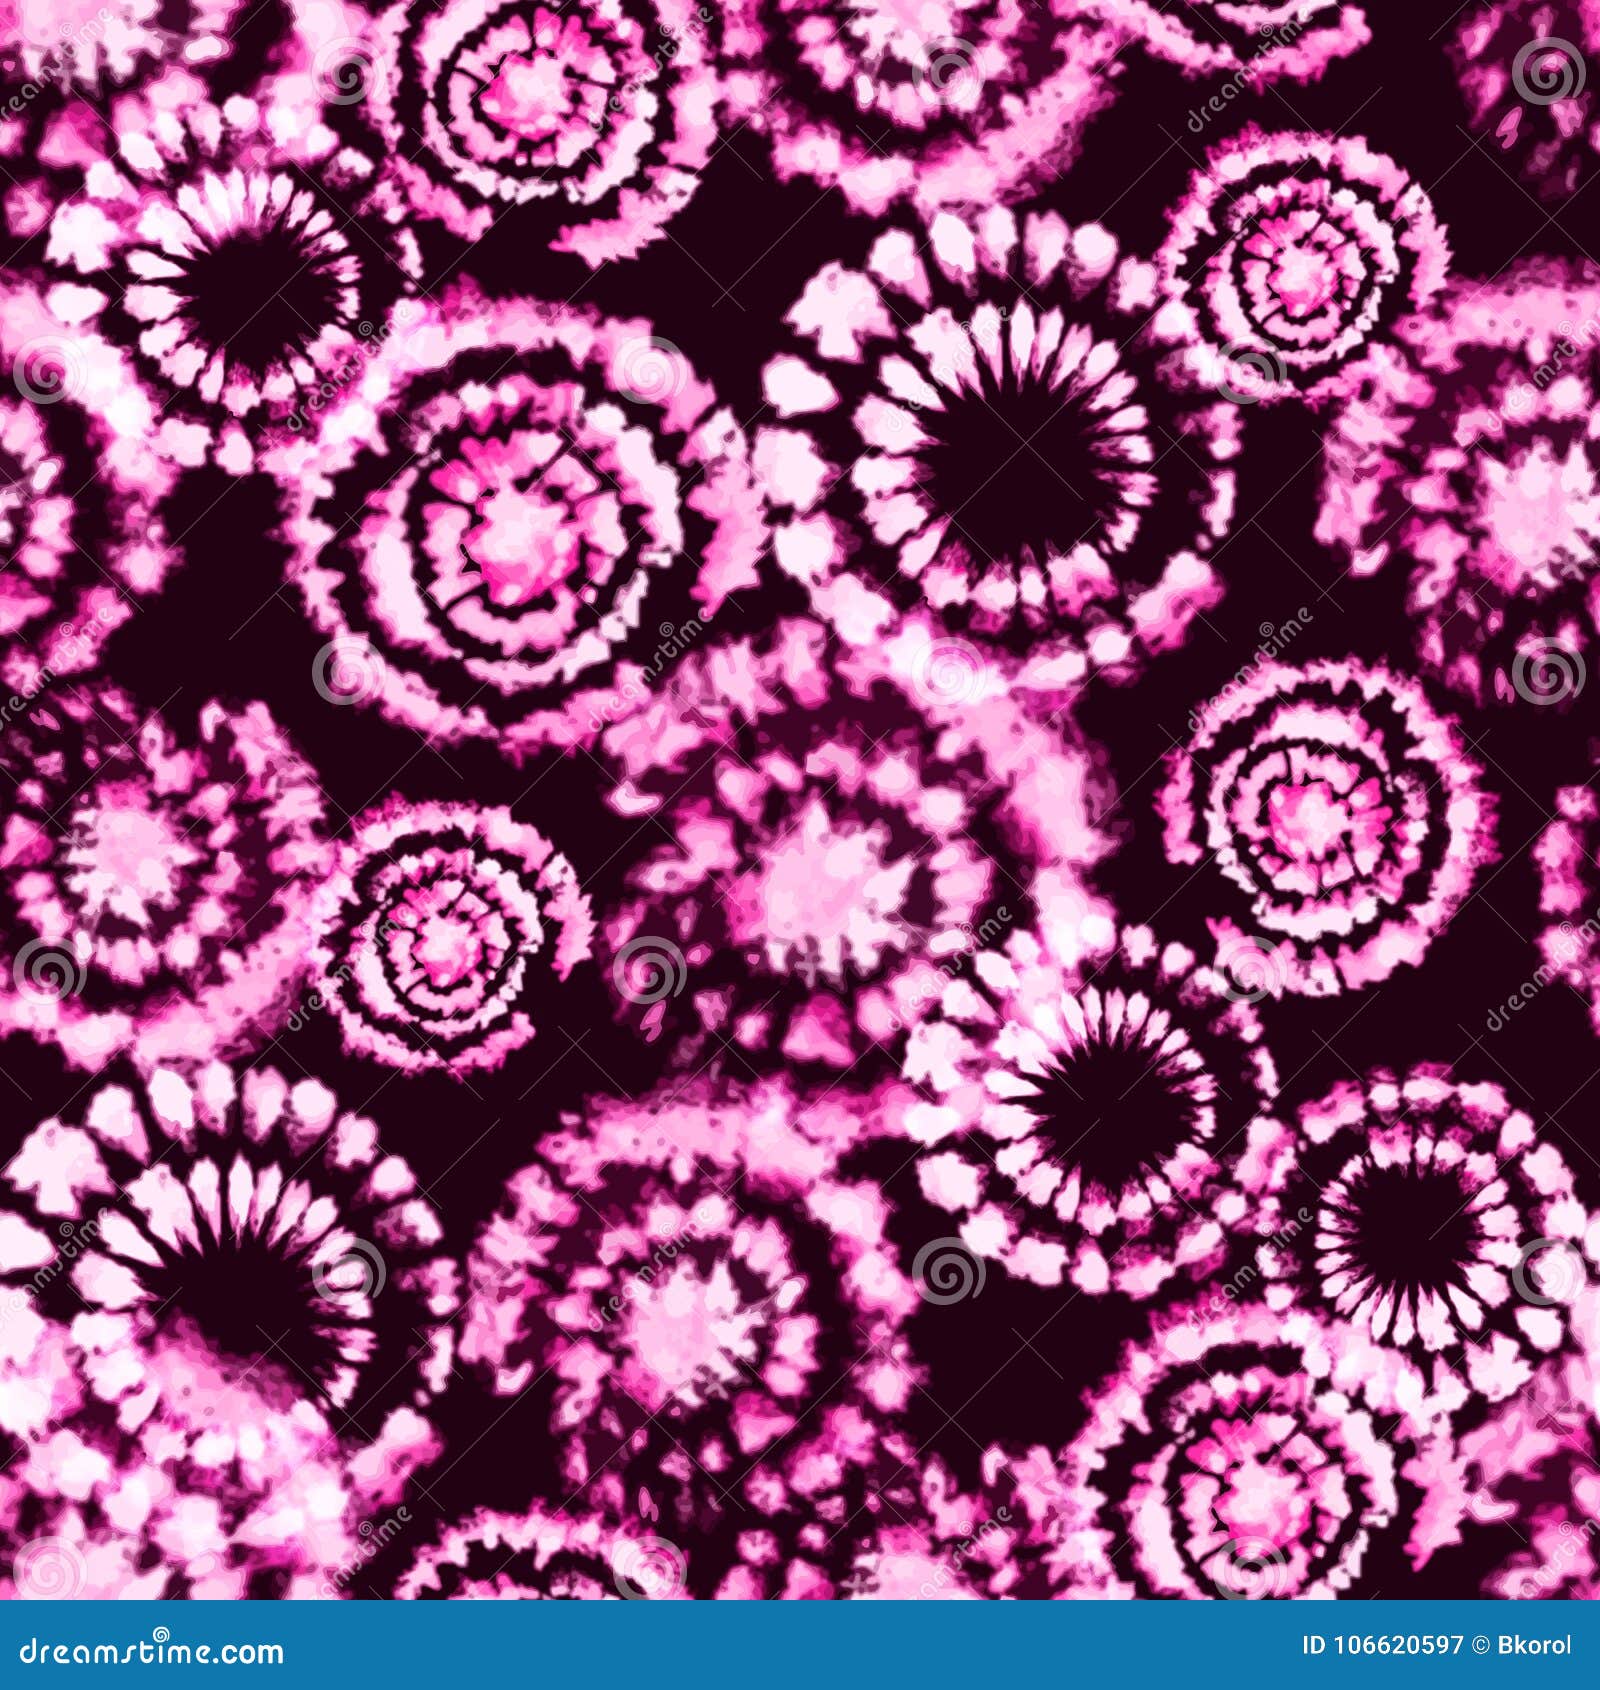  tie dye shibori print. seamless hand drawn pattern.